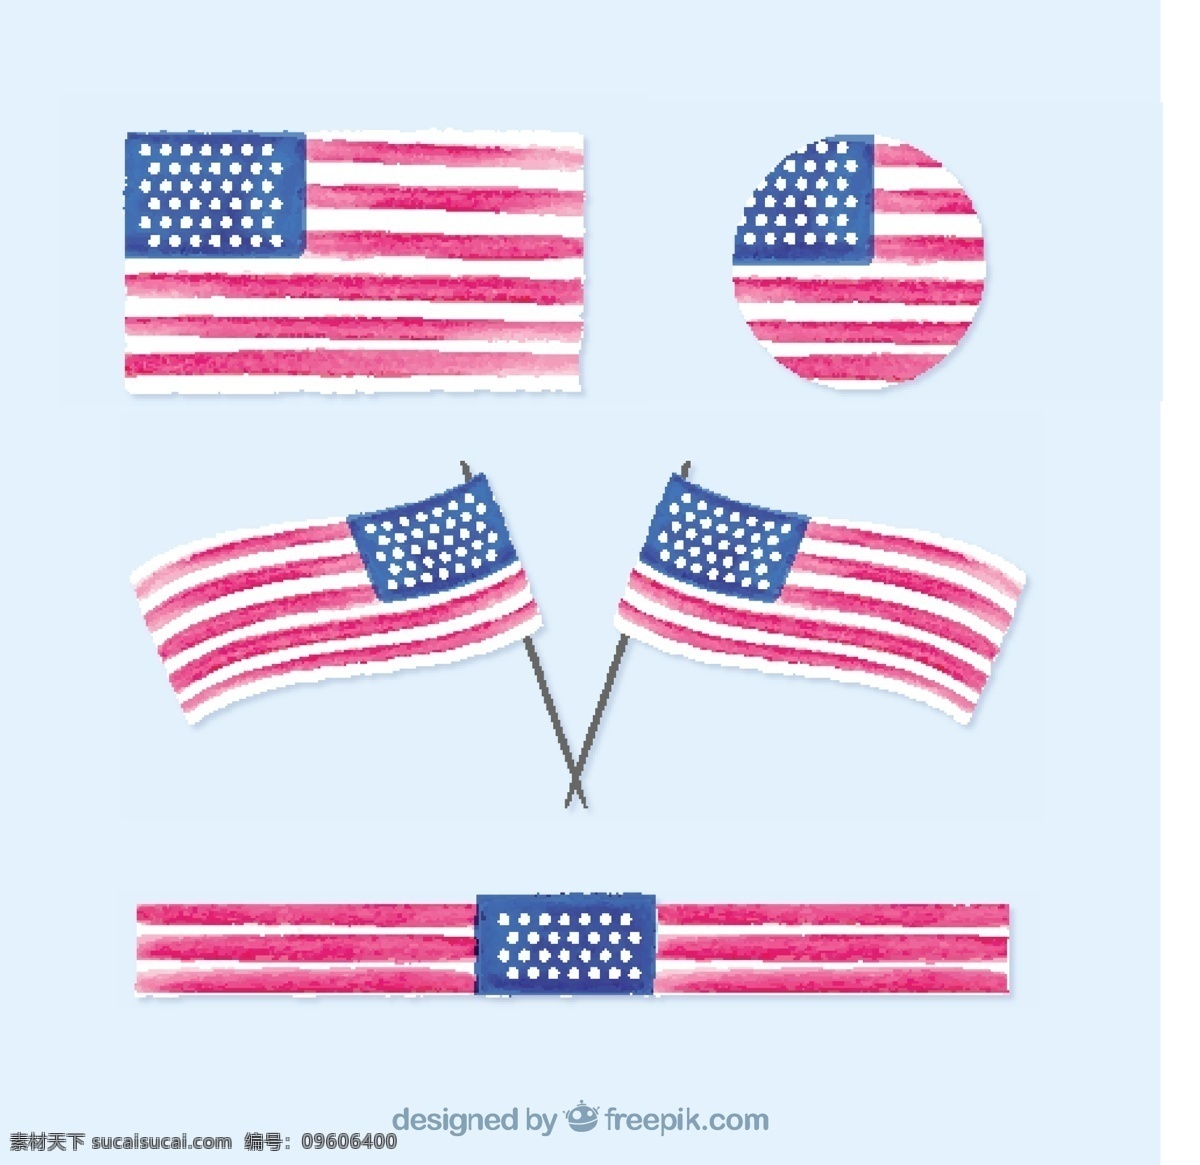 各种 水彩 风格 美国 国旗 设计素材 水彩风格 美国国旗